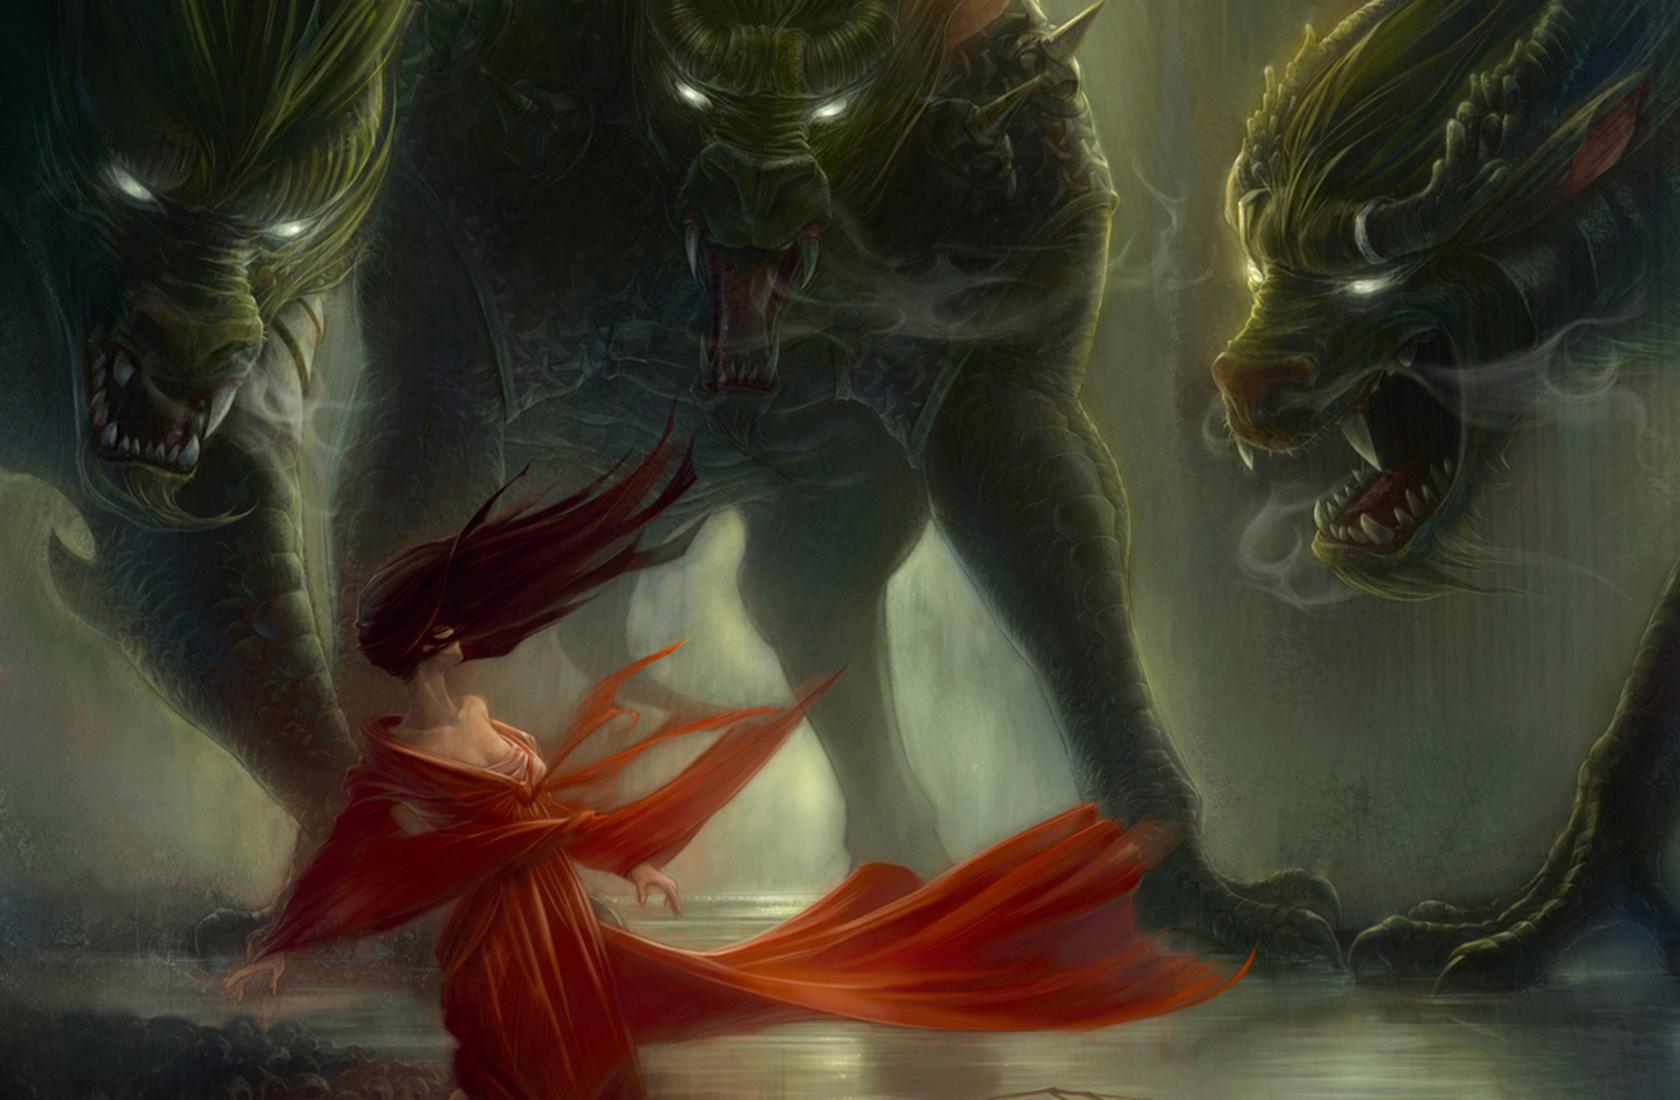 Fantasy art dark horror monsters demons wolves wolf women mood scared wallpaperx1100